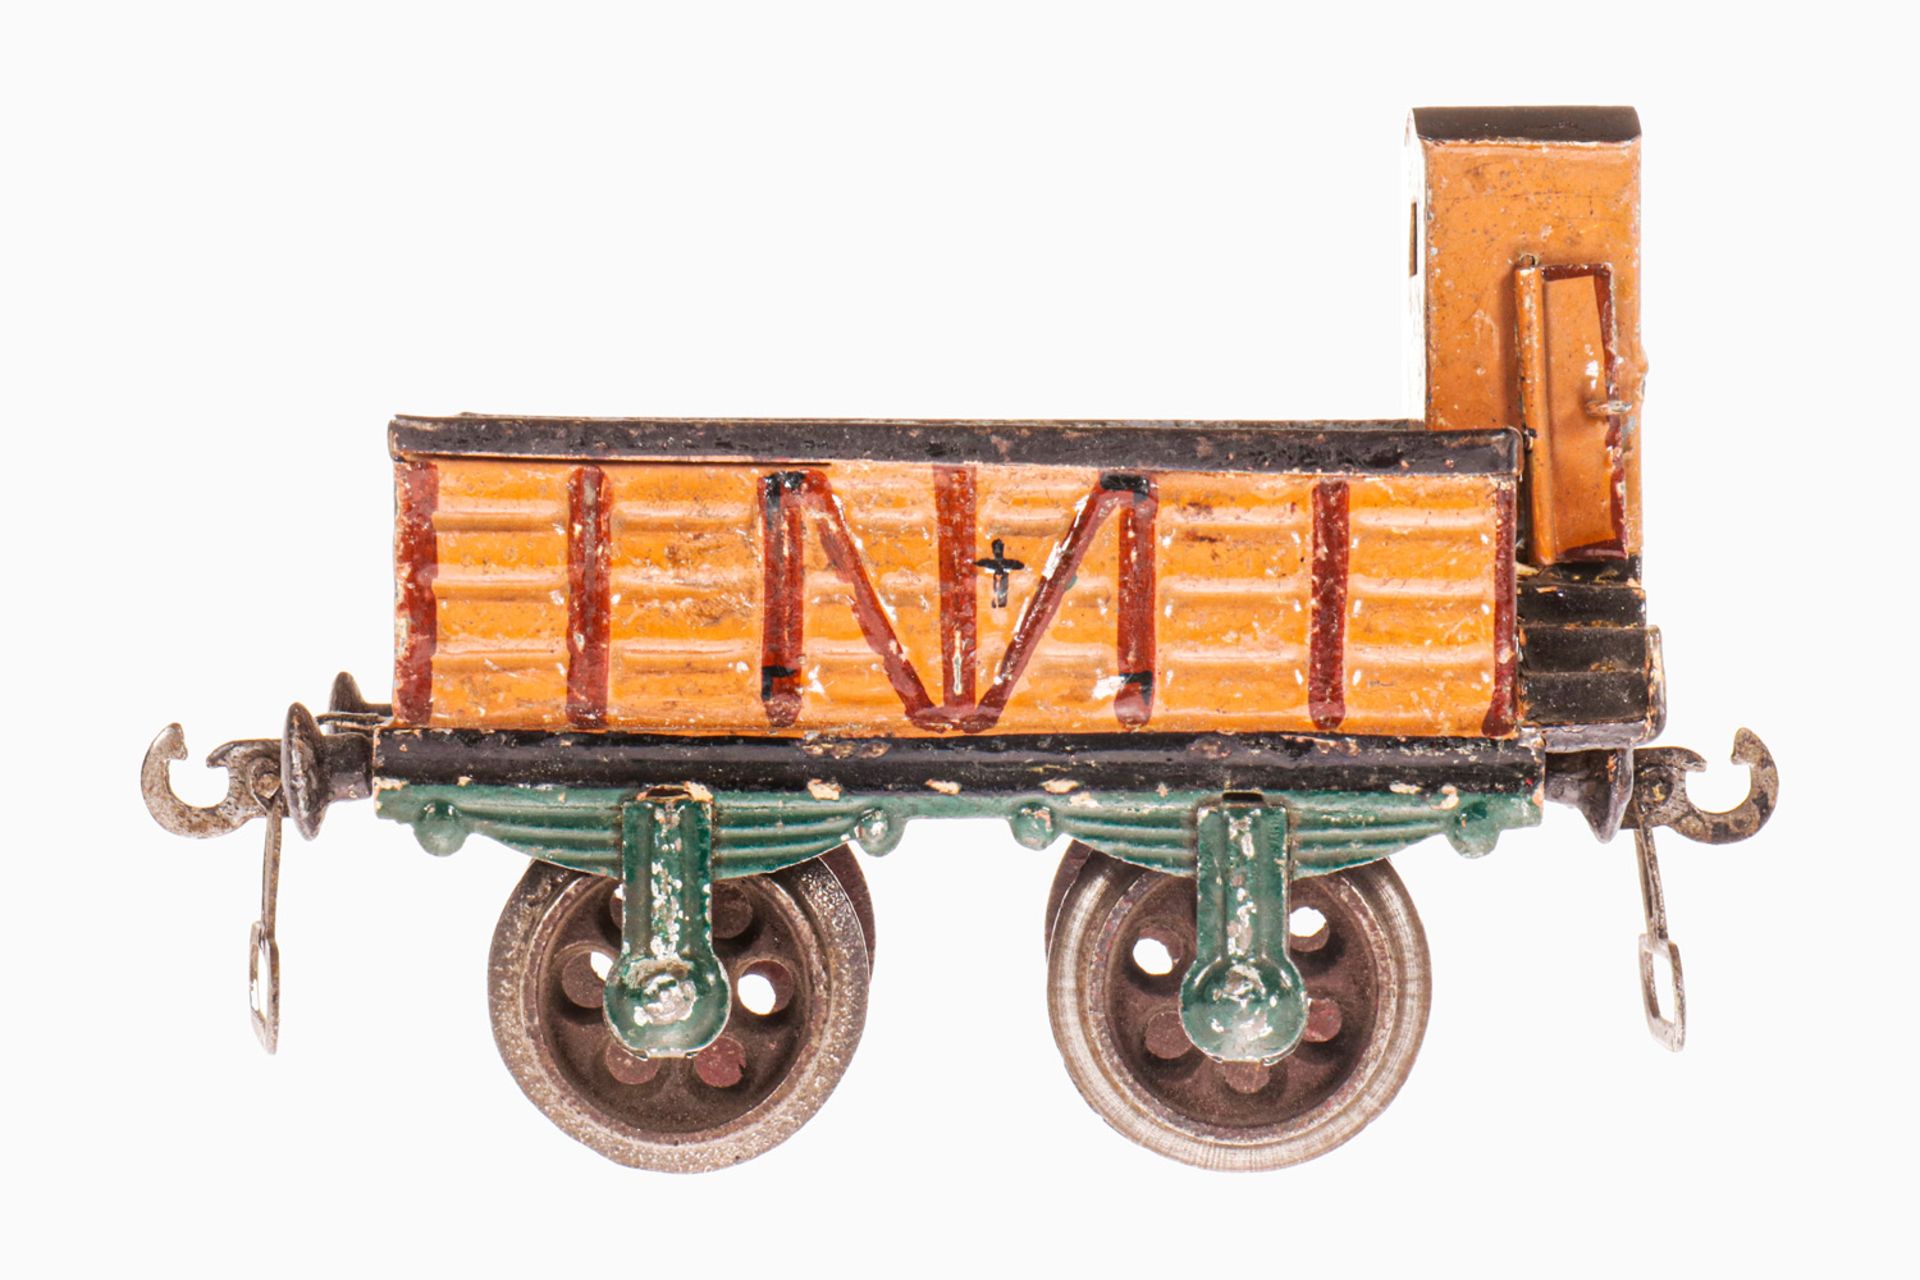 Märklin offener Güterwagen 1817, S 1, uralt, braun HL, mit BRHh und Gussrädern, Handlauf fehlt, LS